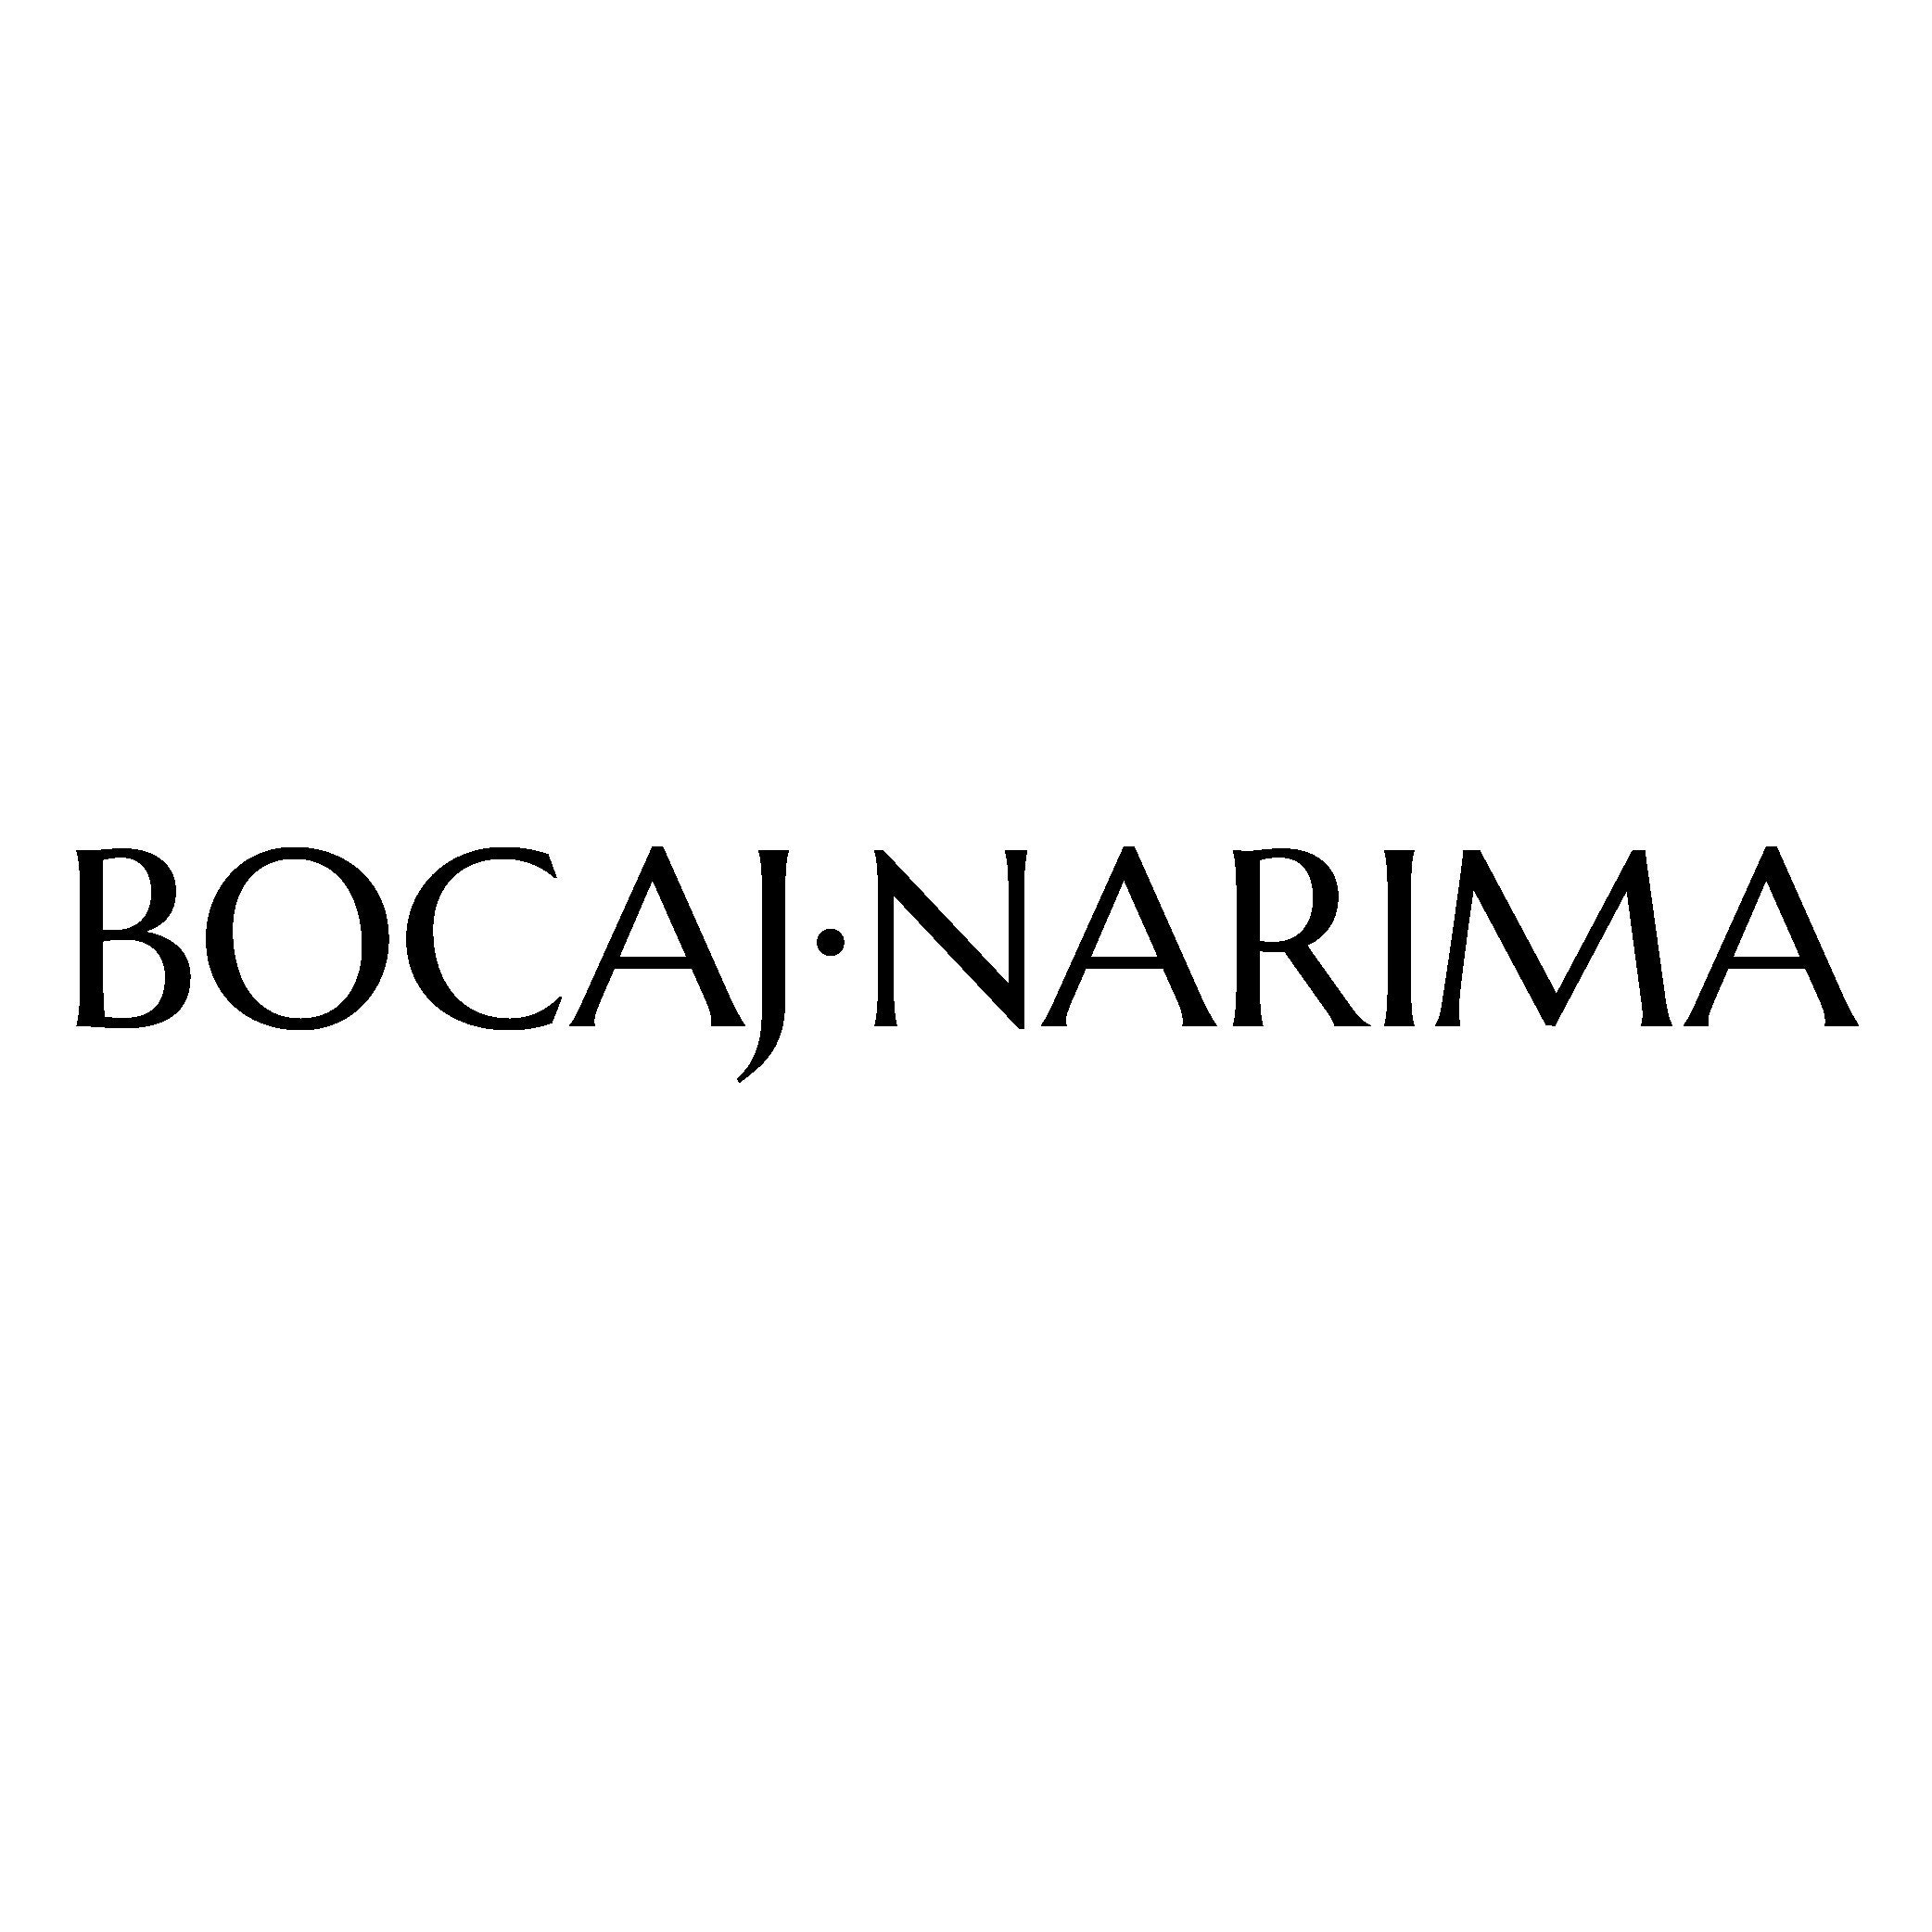 BocajNarima -